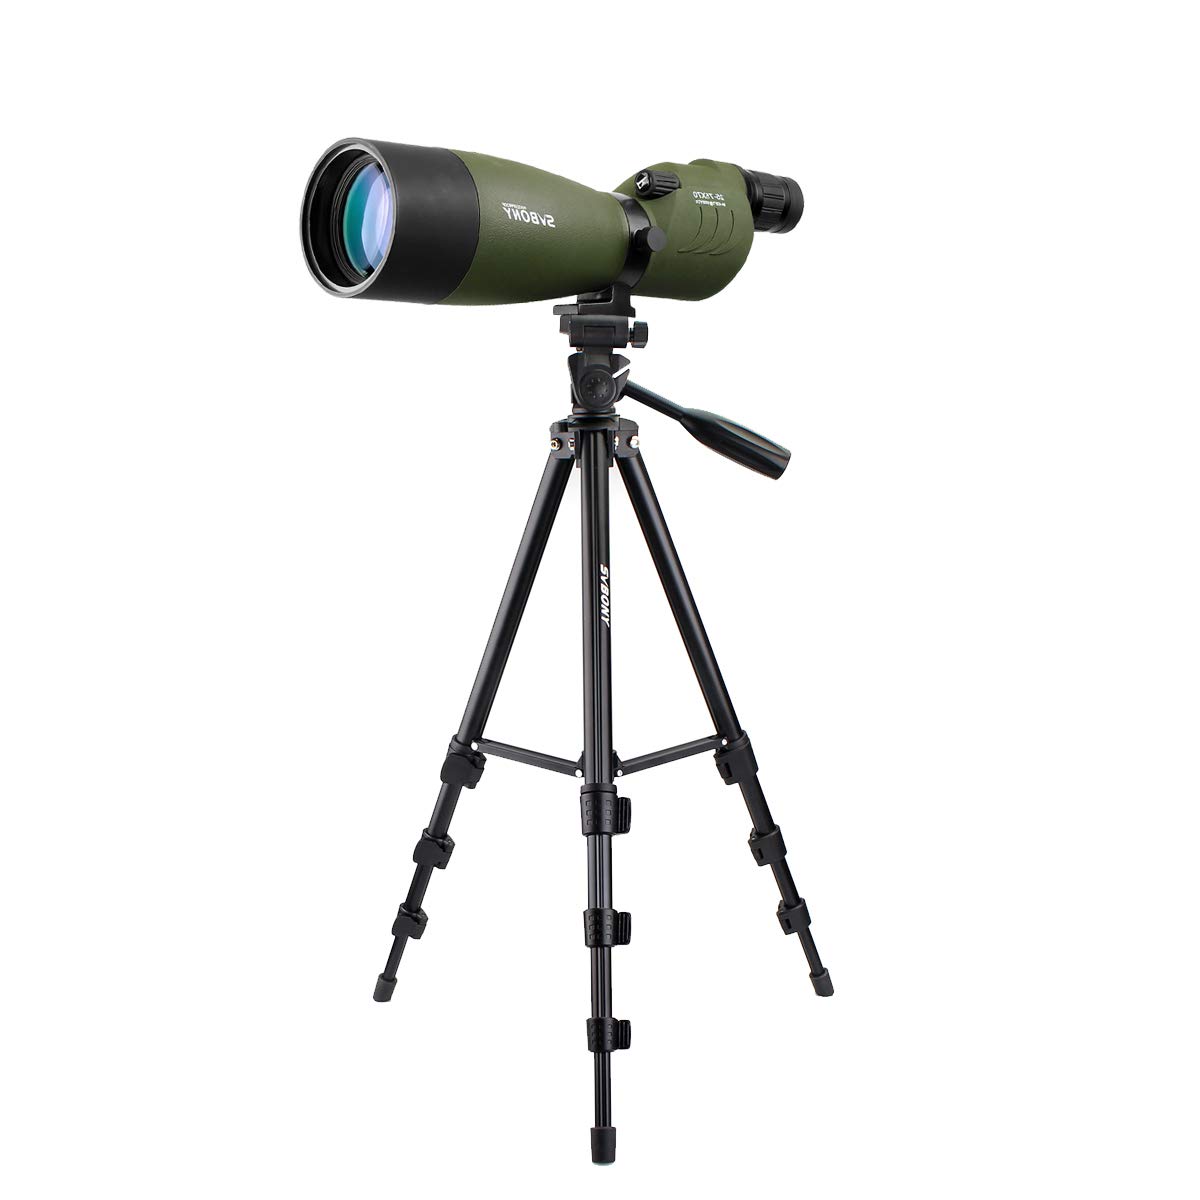 Svbony SV17 Spektiv Geradeeinblick mit Stativ 25-75x70, HD Bak4 Prism FMC Objektiv Spotting Scope für Sportschießen, Bogenschießen, Vogelbeobachtung